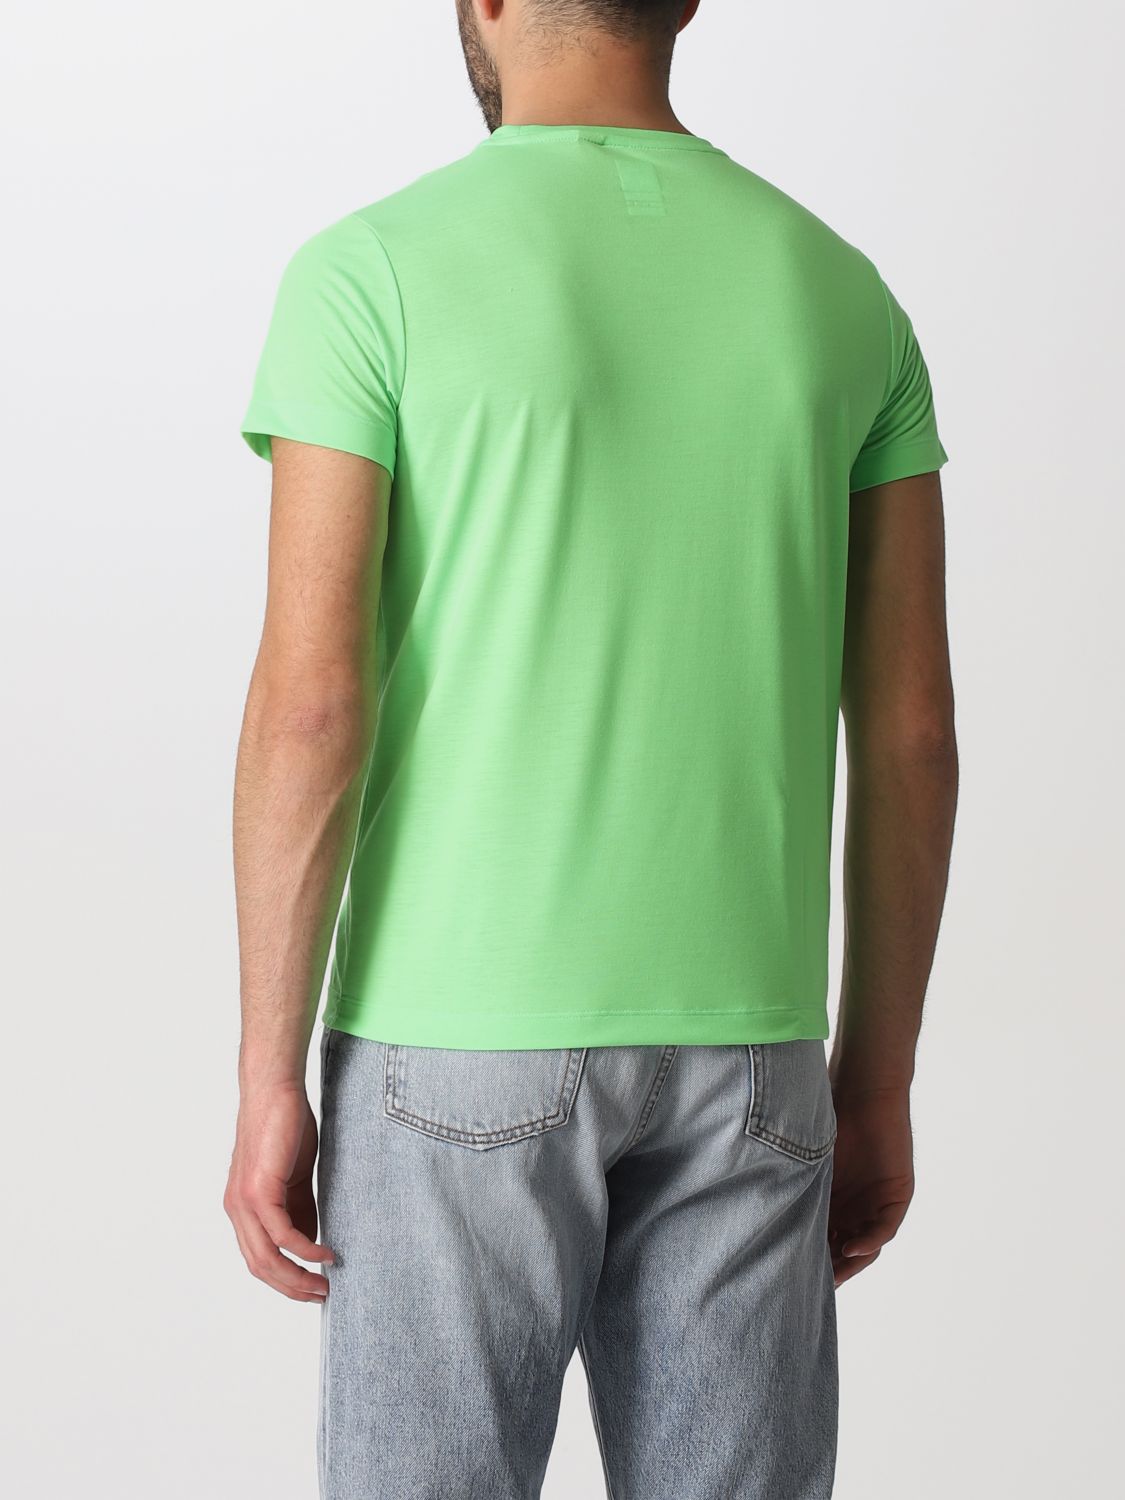 T-shirt K-Way: K-Way t-shirt for men green 2